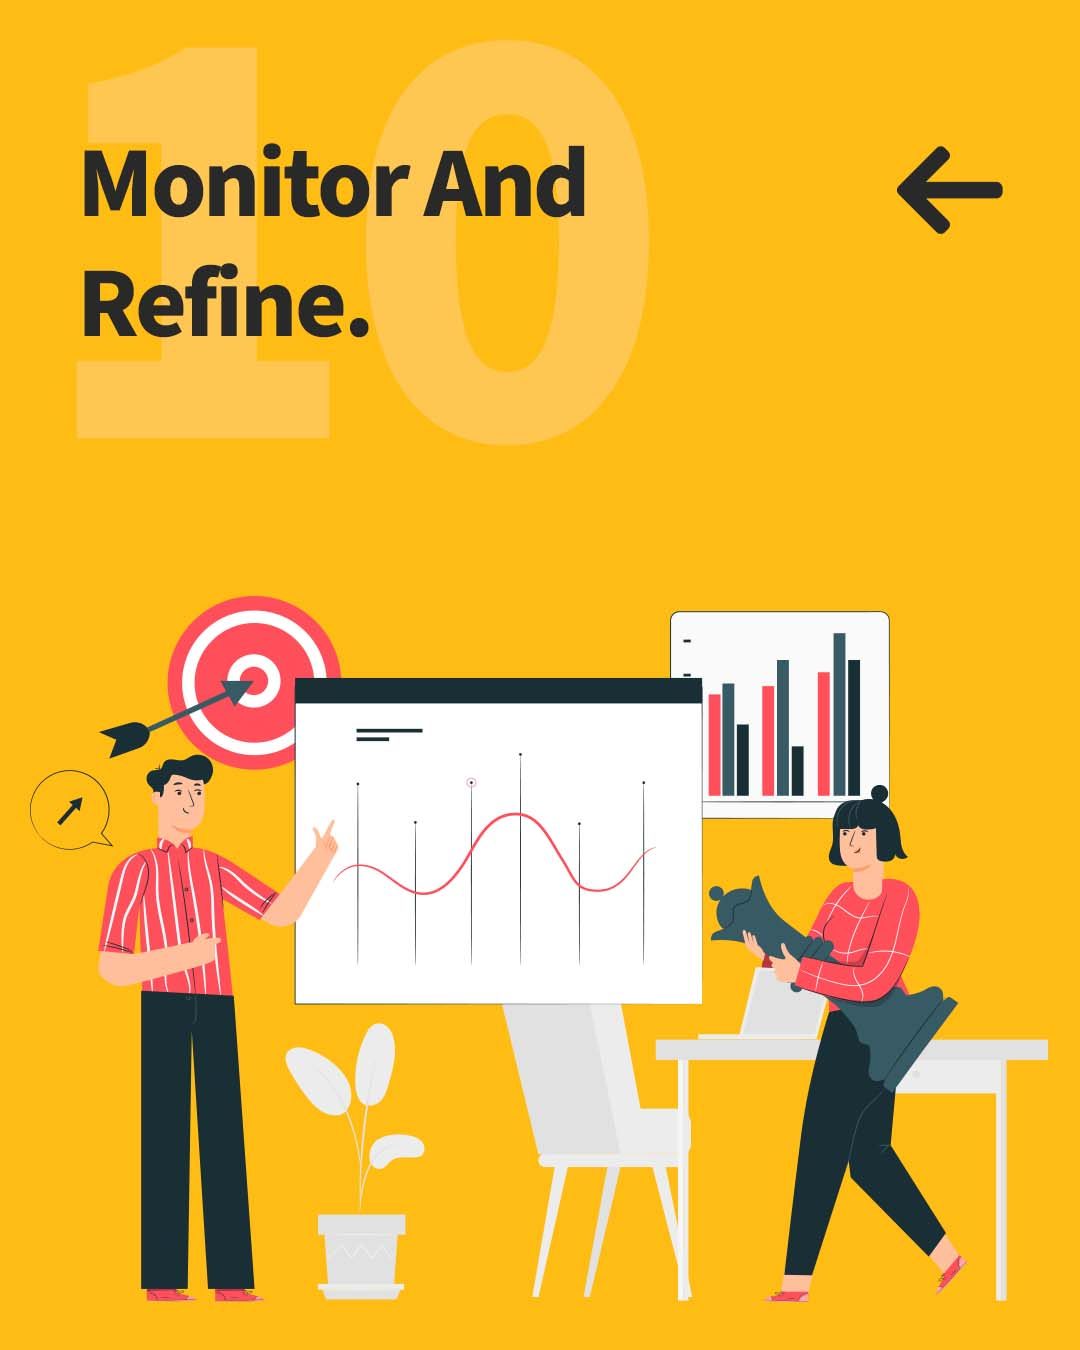 10. Monitor And Refine